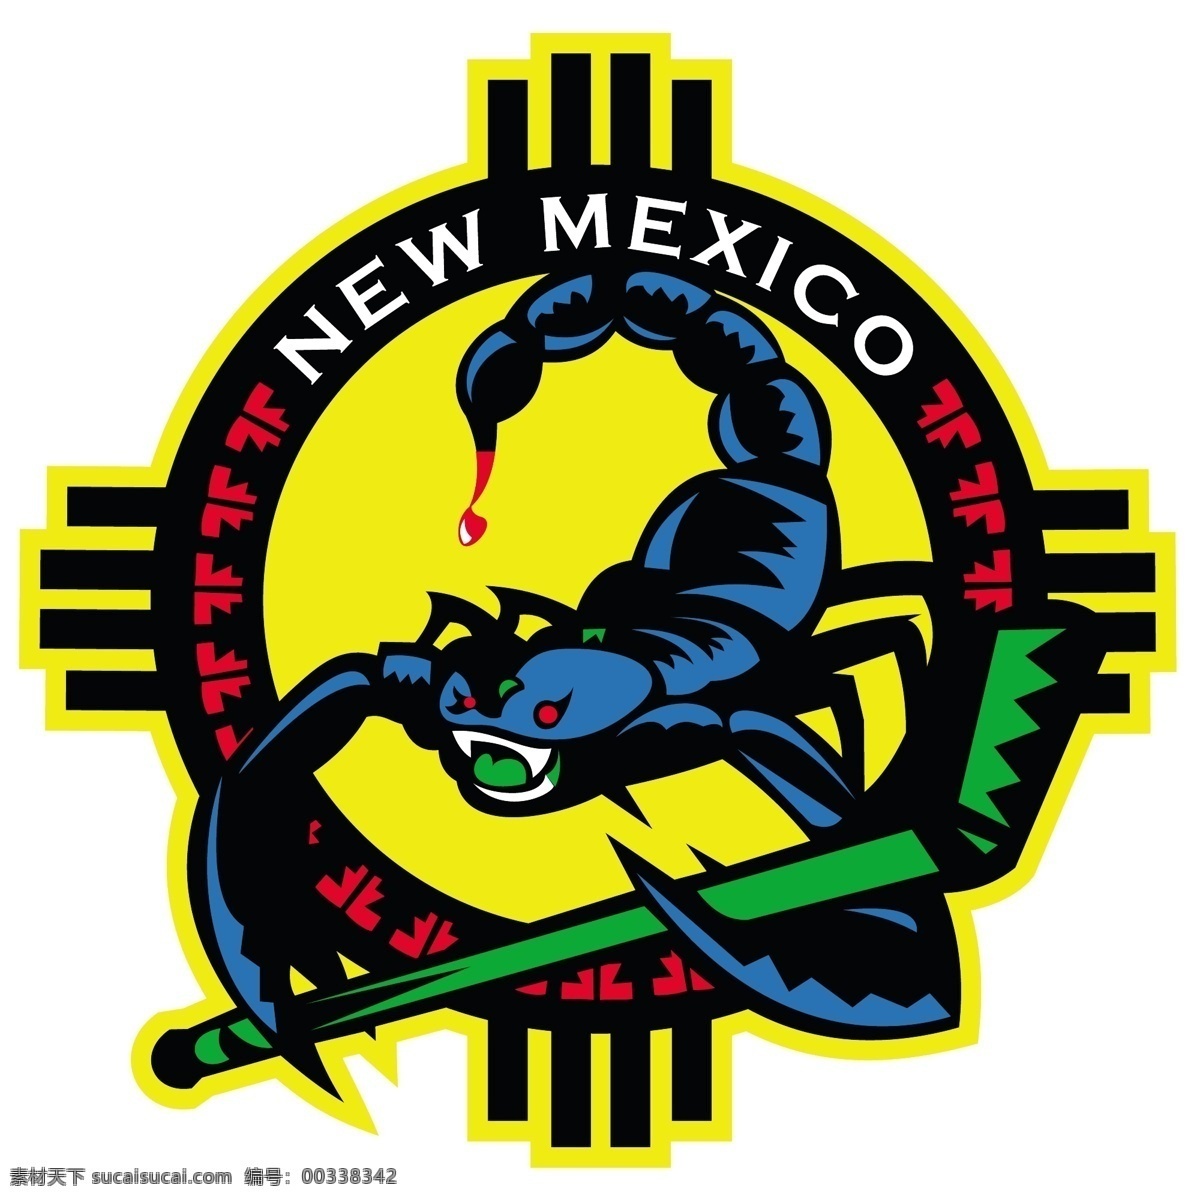 新墨西哥蝎子 墨西哥 蝎子 新的 新的墨西哥 墨西哥新艺术 新墨西哥 向量 向量eps 新 国旗 矢量 旗 国家 自由的新 矢量图 建筑家居